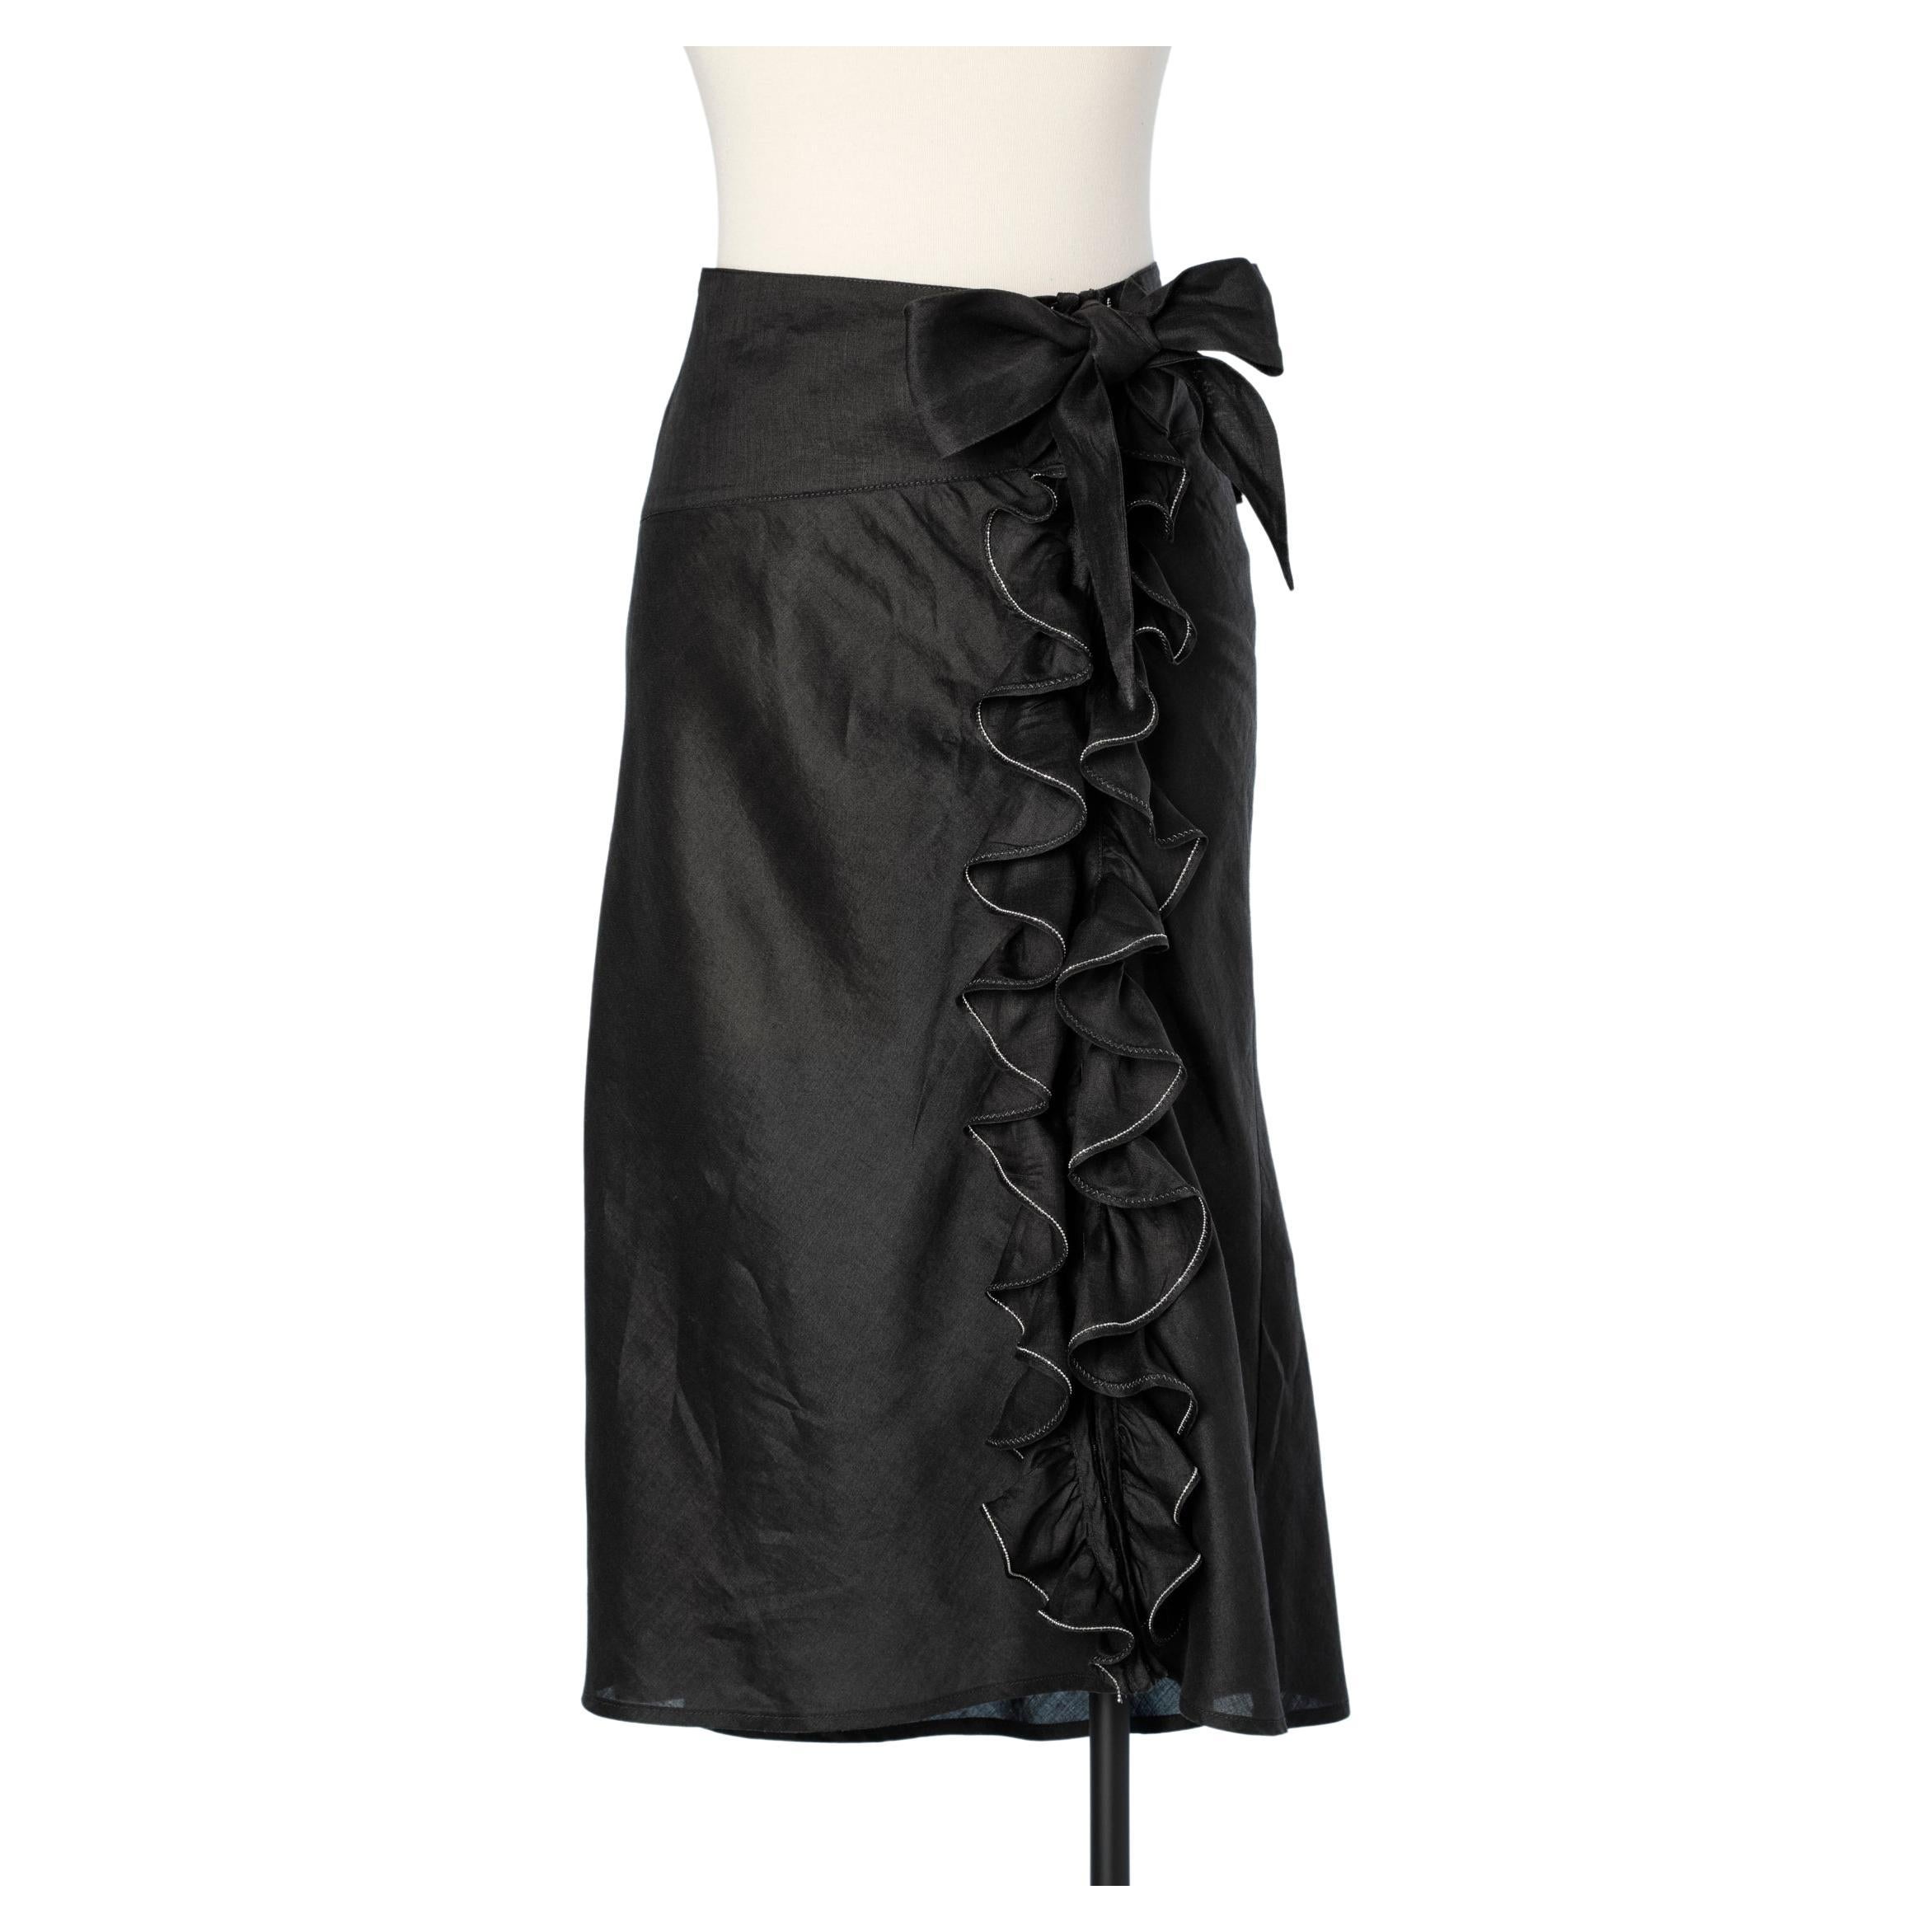 Black linen skirt with ruffles Jean-Paul Gaultier 